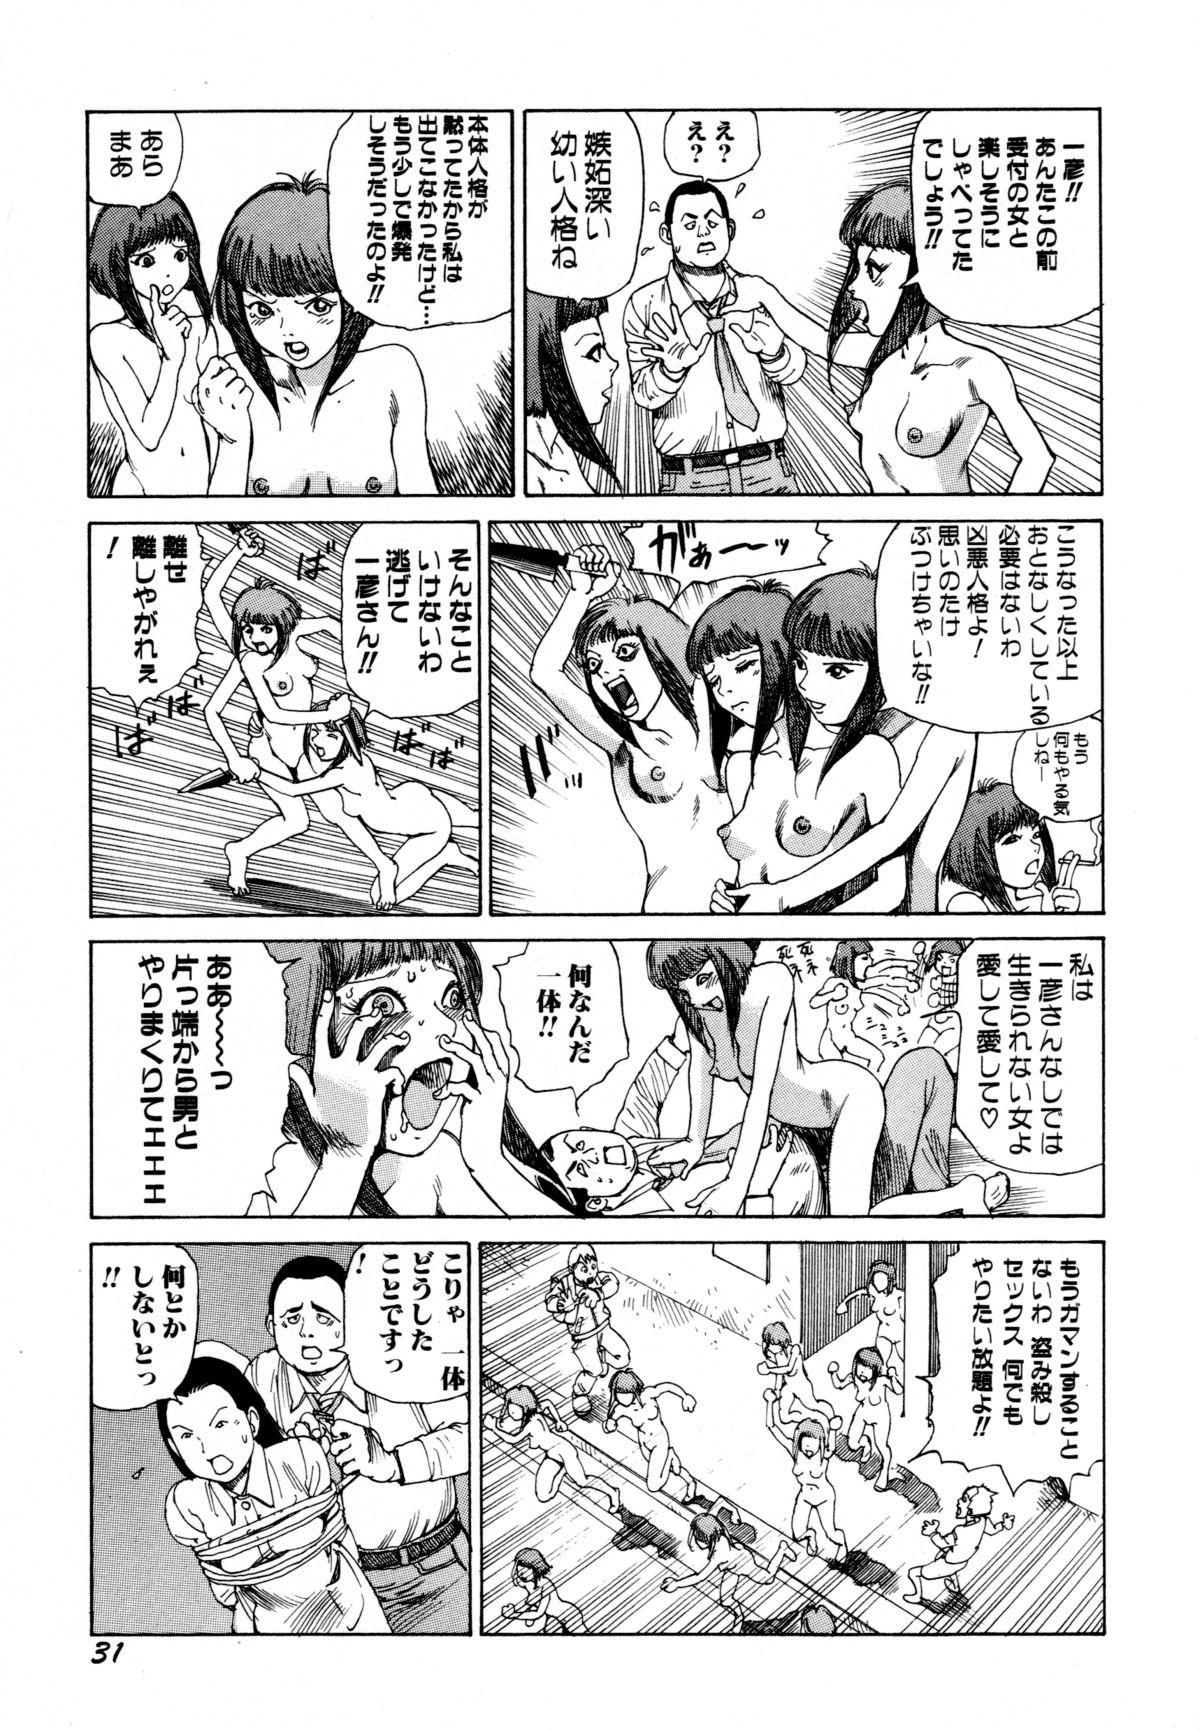 Arijigoku vs Barabara Shoujo - Antlion vs BaraBara Girl 32